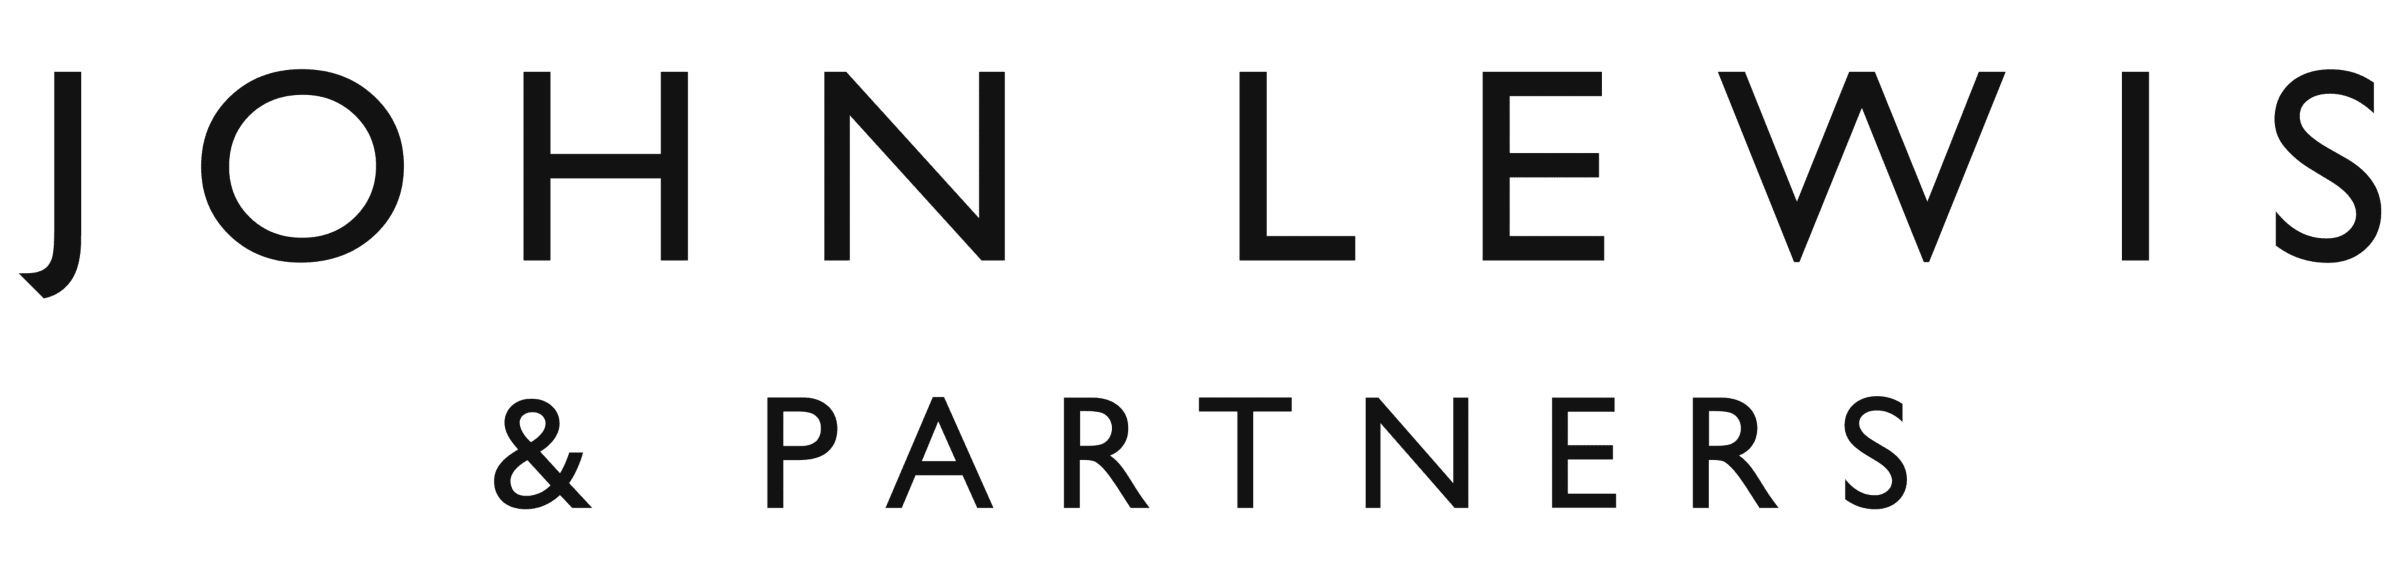 John lewis logo